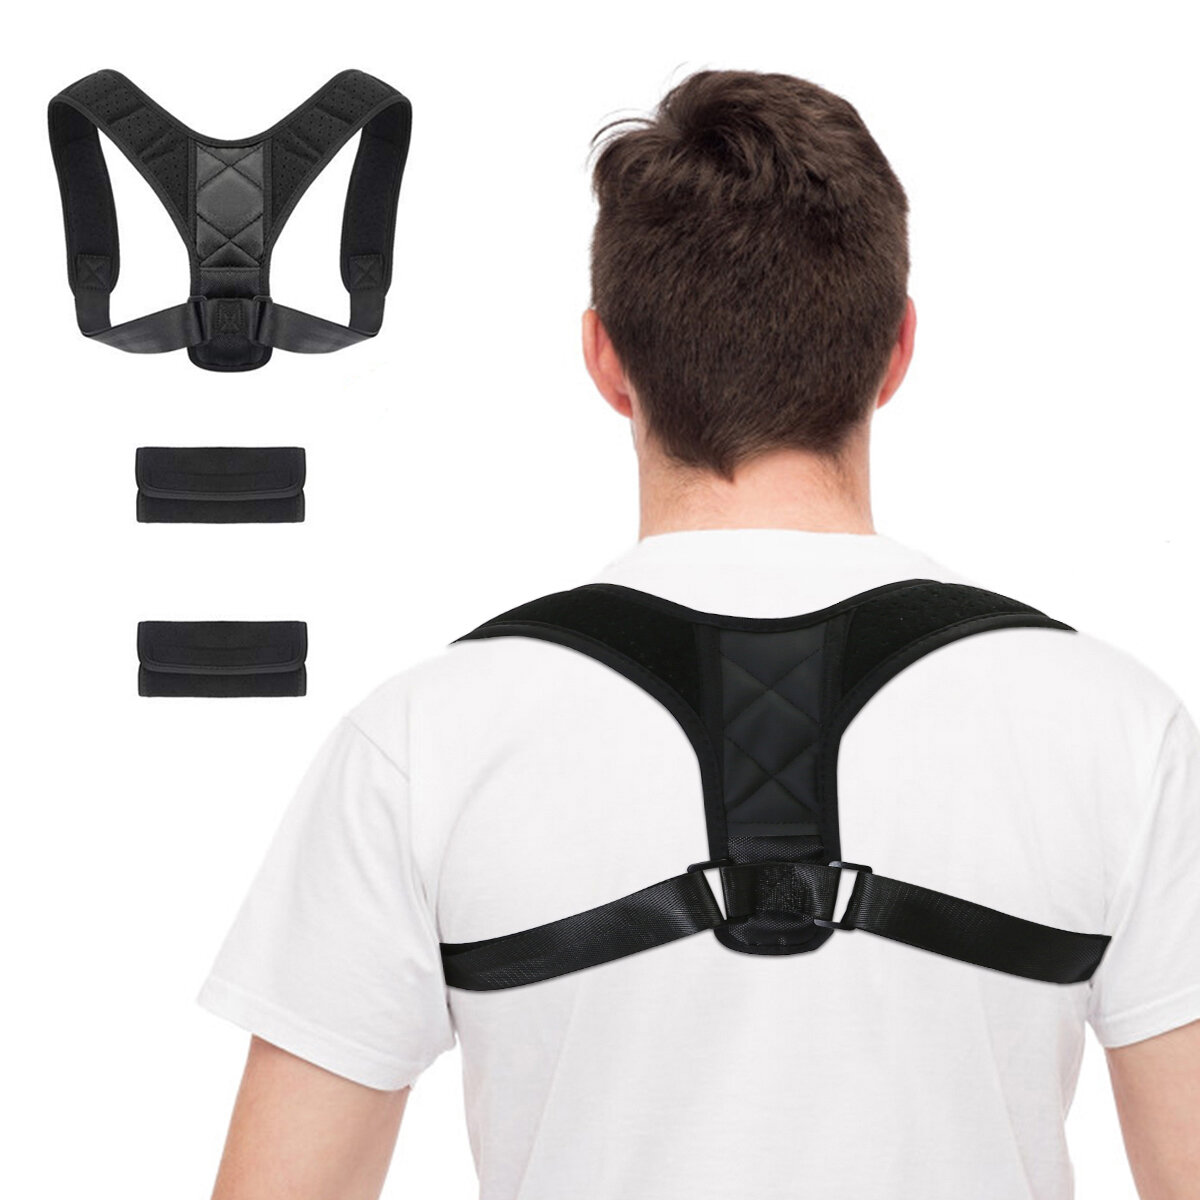 Brace Support Belt Adjustable Back Posture Corrector Clavicle Spine Back Shoulder Lumbar Posture Correction Sport Fitnes